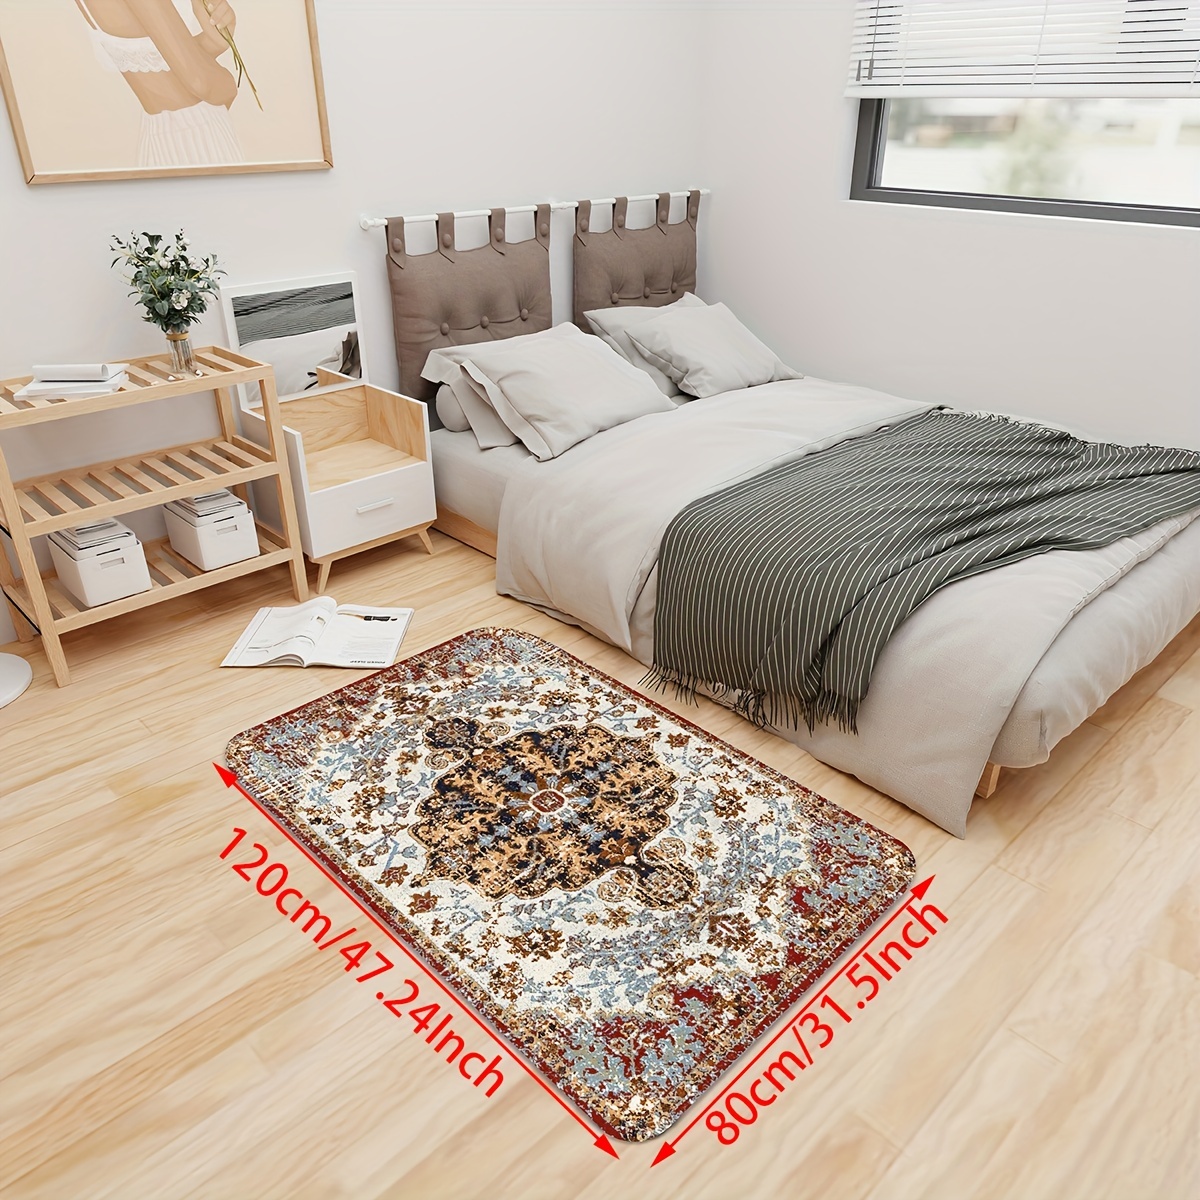 Waterproof Oilproof Kitchen Mat Antislip Bath Mat Soft Bedroom Floor Mat Rug